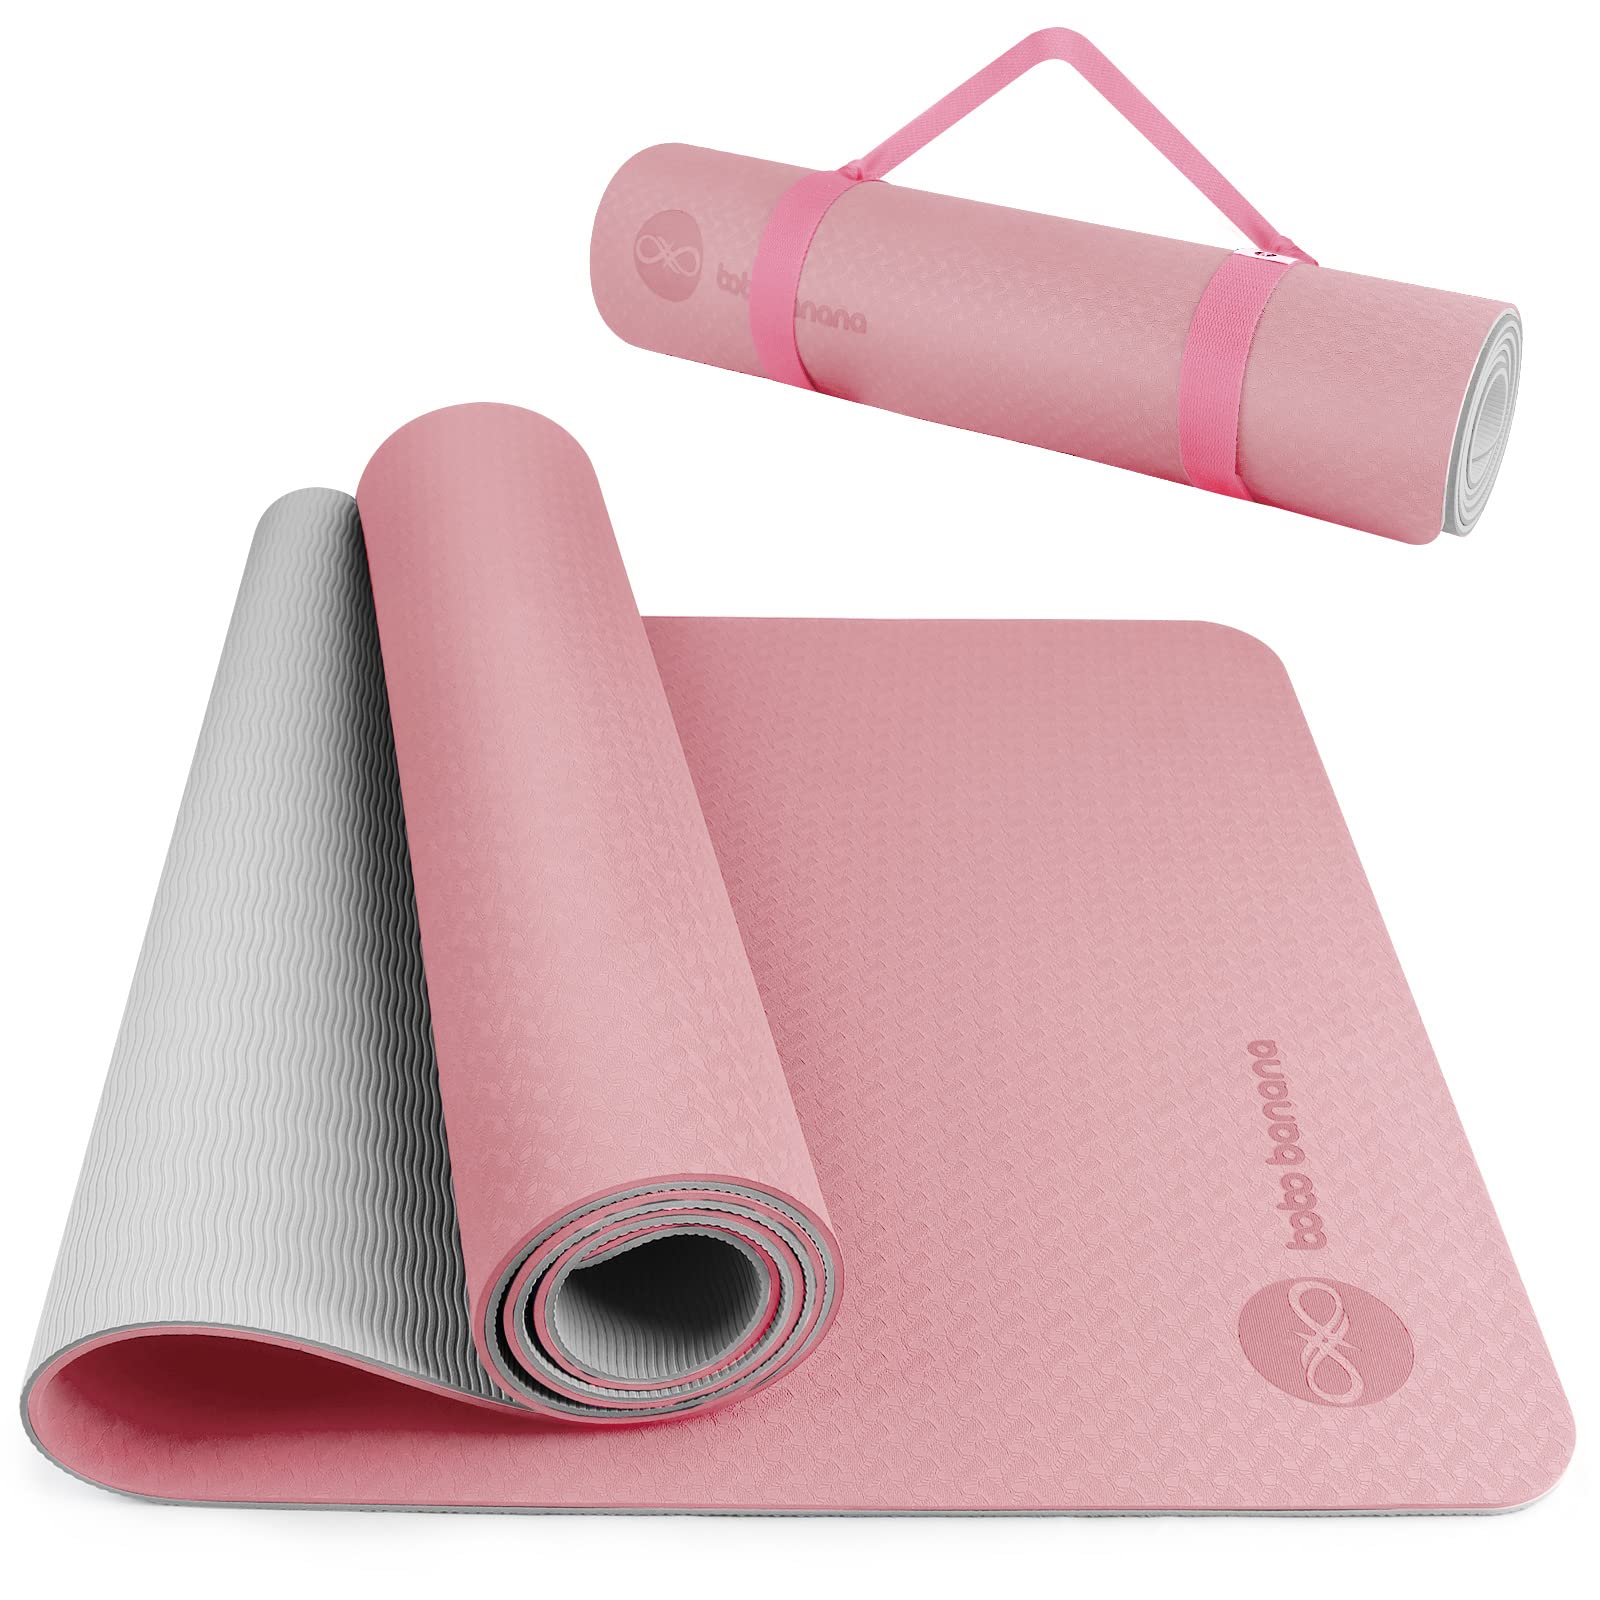 BOBO BANANA 1/4 Thick TPE Yoga Mat,72x24 Eco-friendly Non-Slip